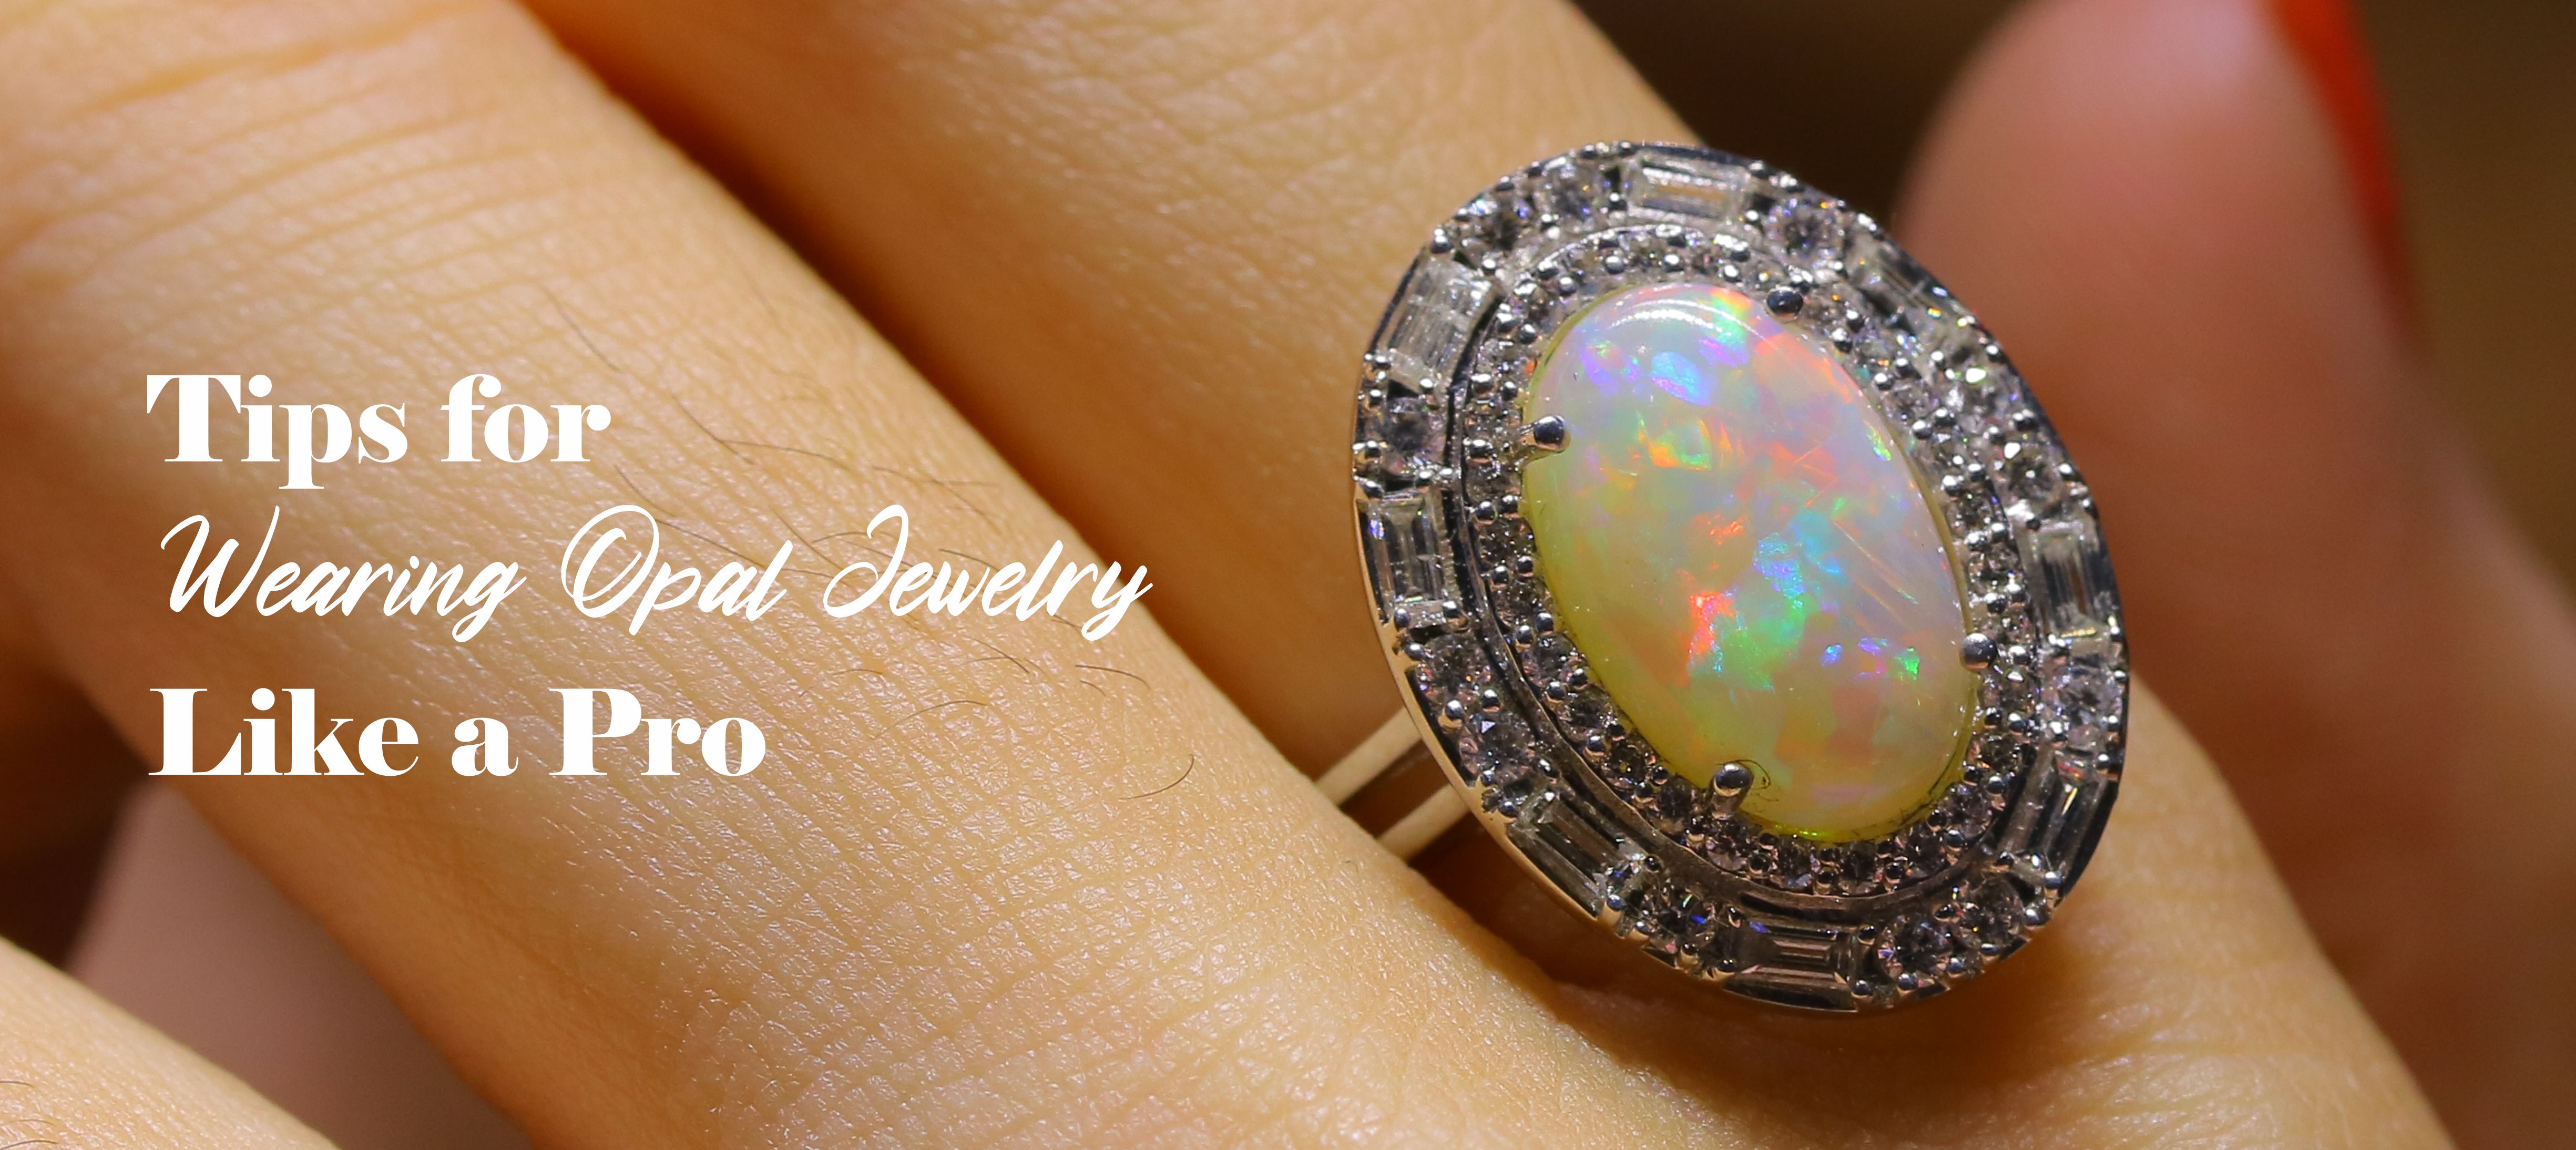 tips-for-wearing-opal-jewelry-like-a-pro.jpg